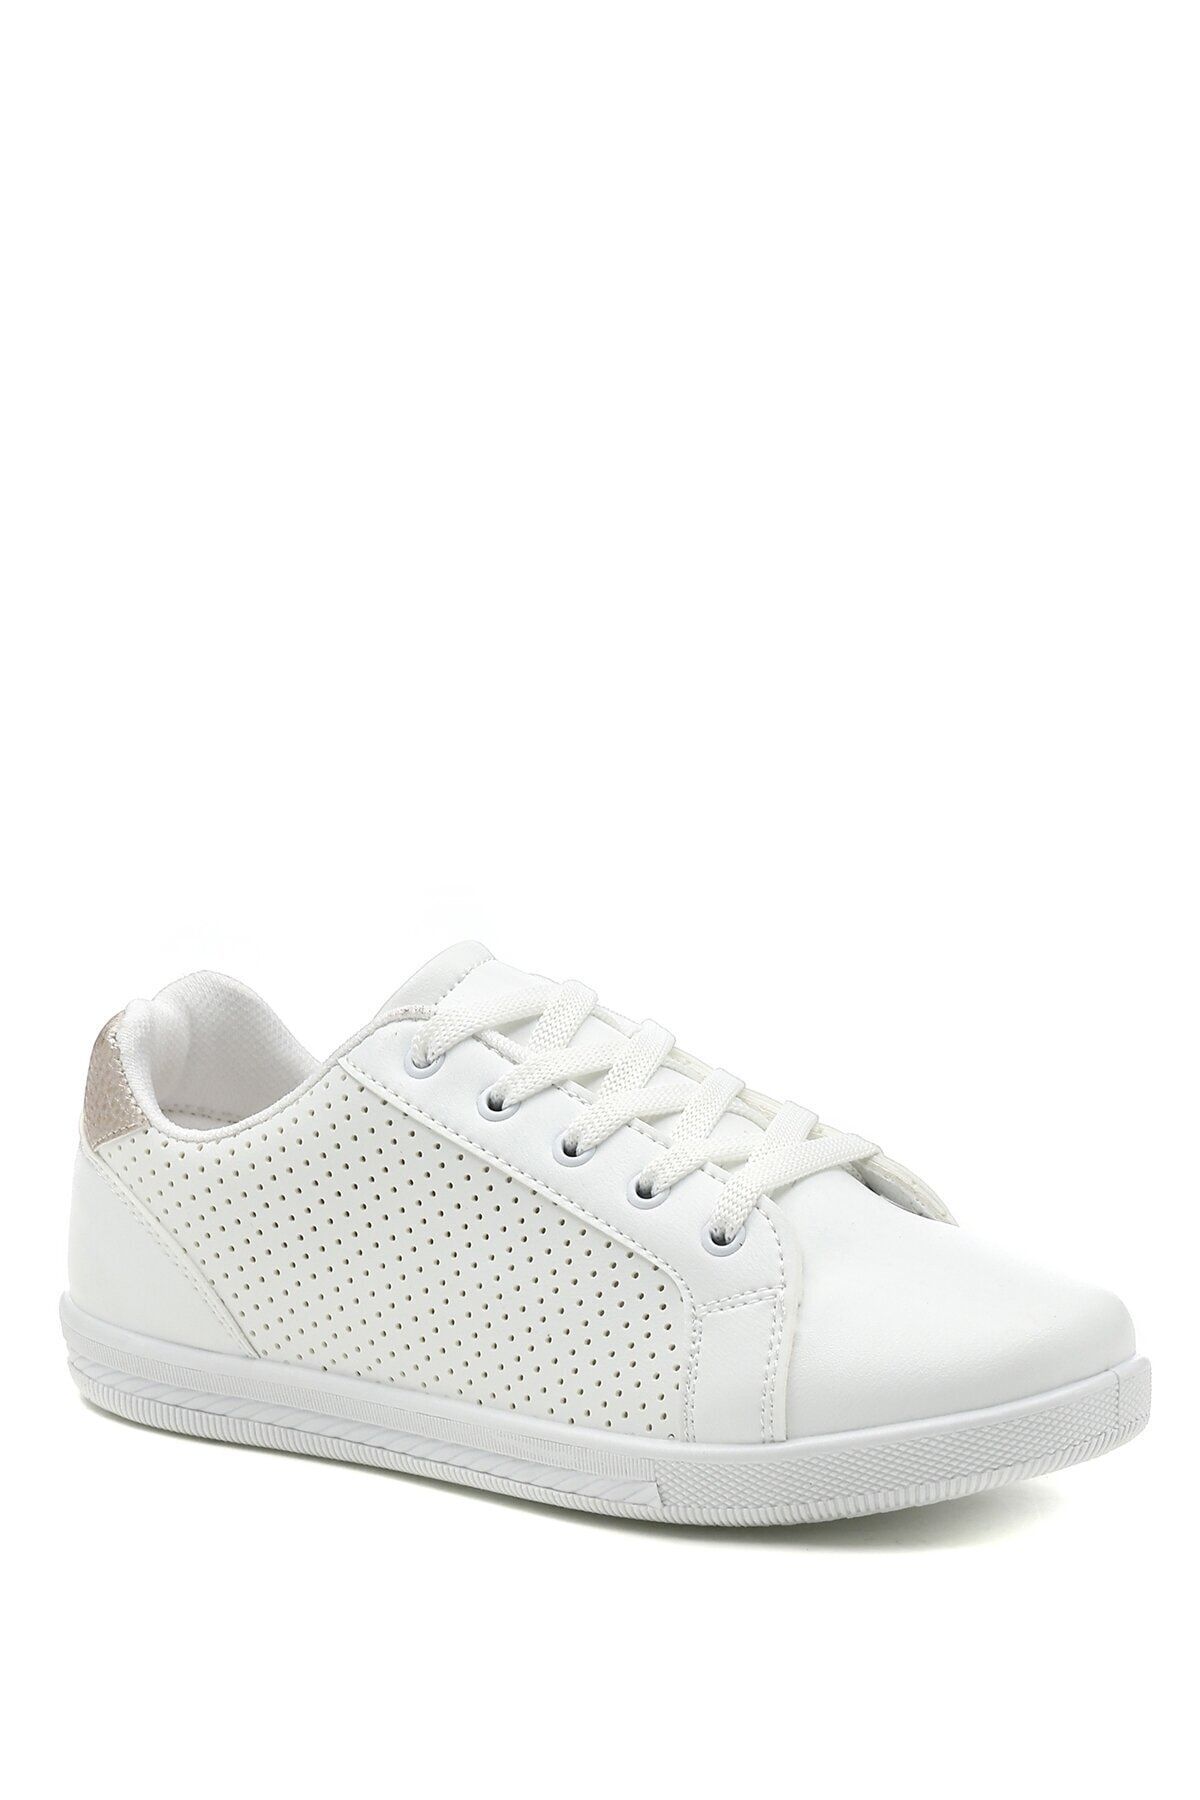 Polaris 319593.z 2fx Beyaz Kadın Sneaker